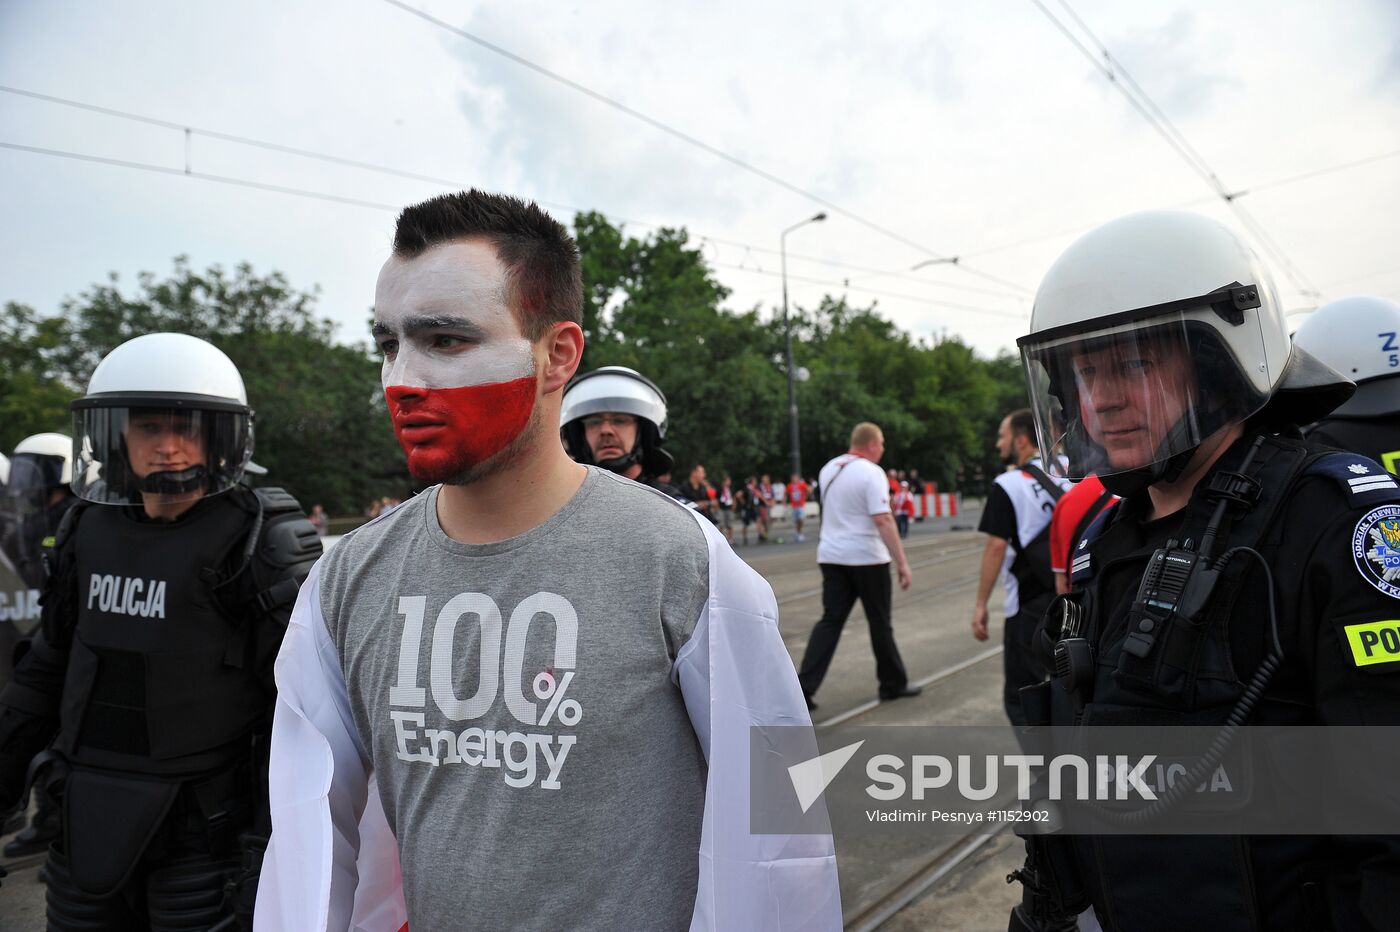 Russian fans march in Warsaw